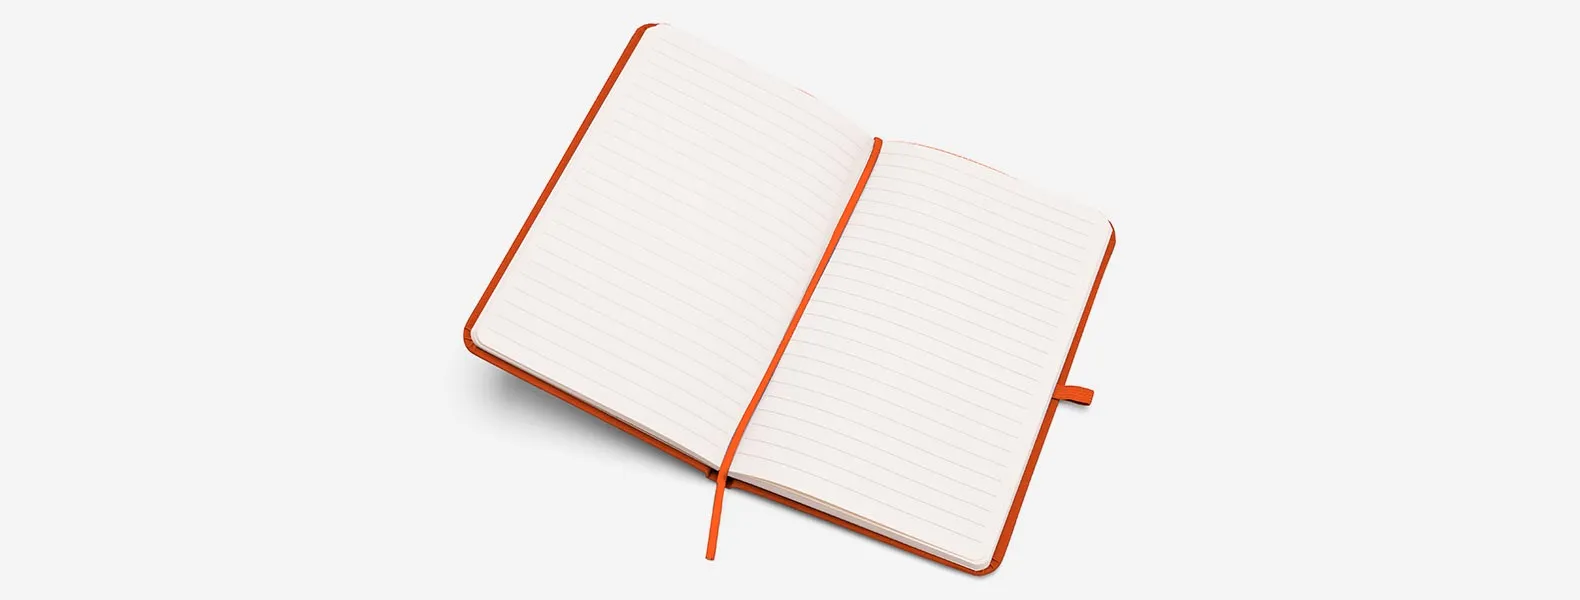 Caderneta para anotações laranja com capa dura. Conta com 80 folhas pautadas, porta caneta e elástico para fechamento Gramatura da folha de 70 g/m2